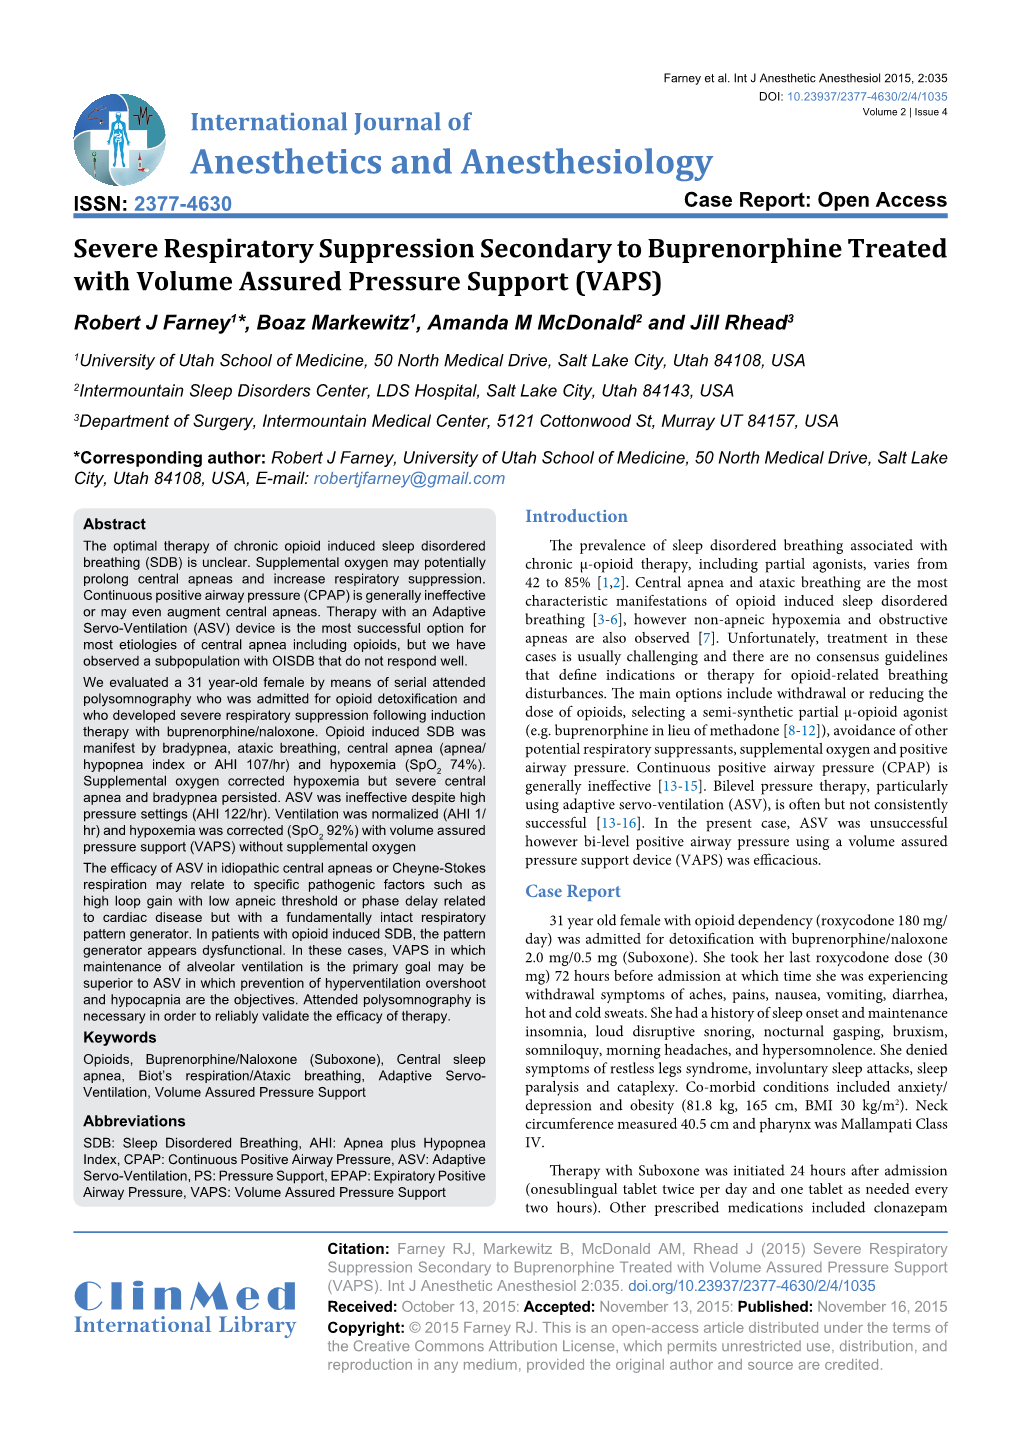 Severe Respiratory Suppression Secondary to Buprenorphine